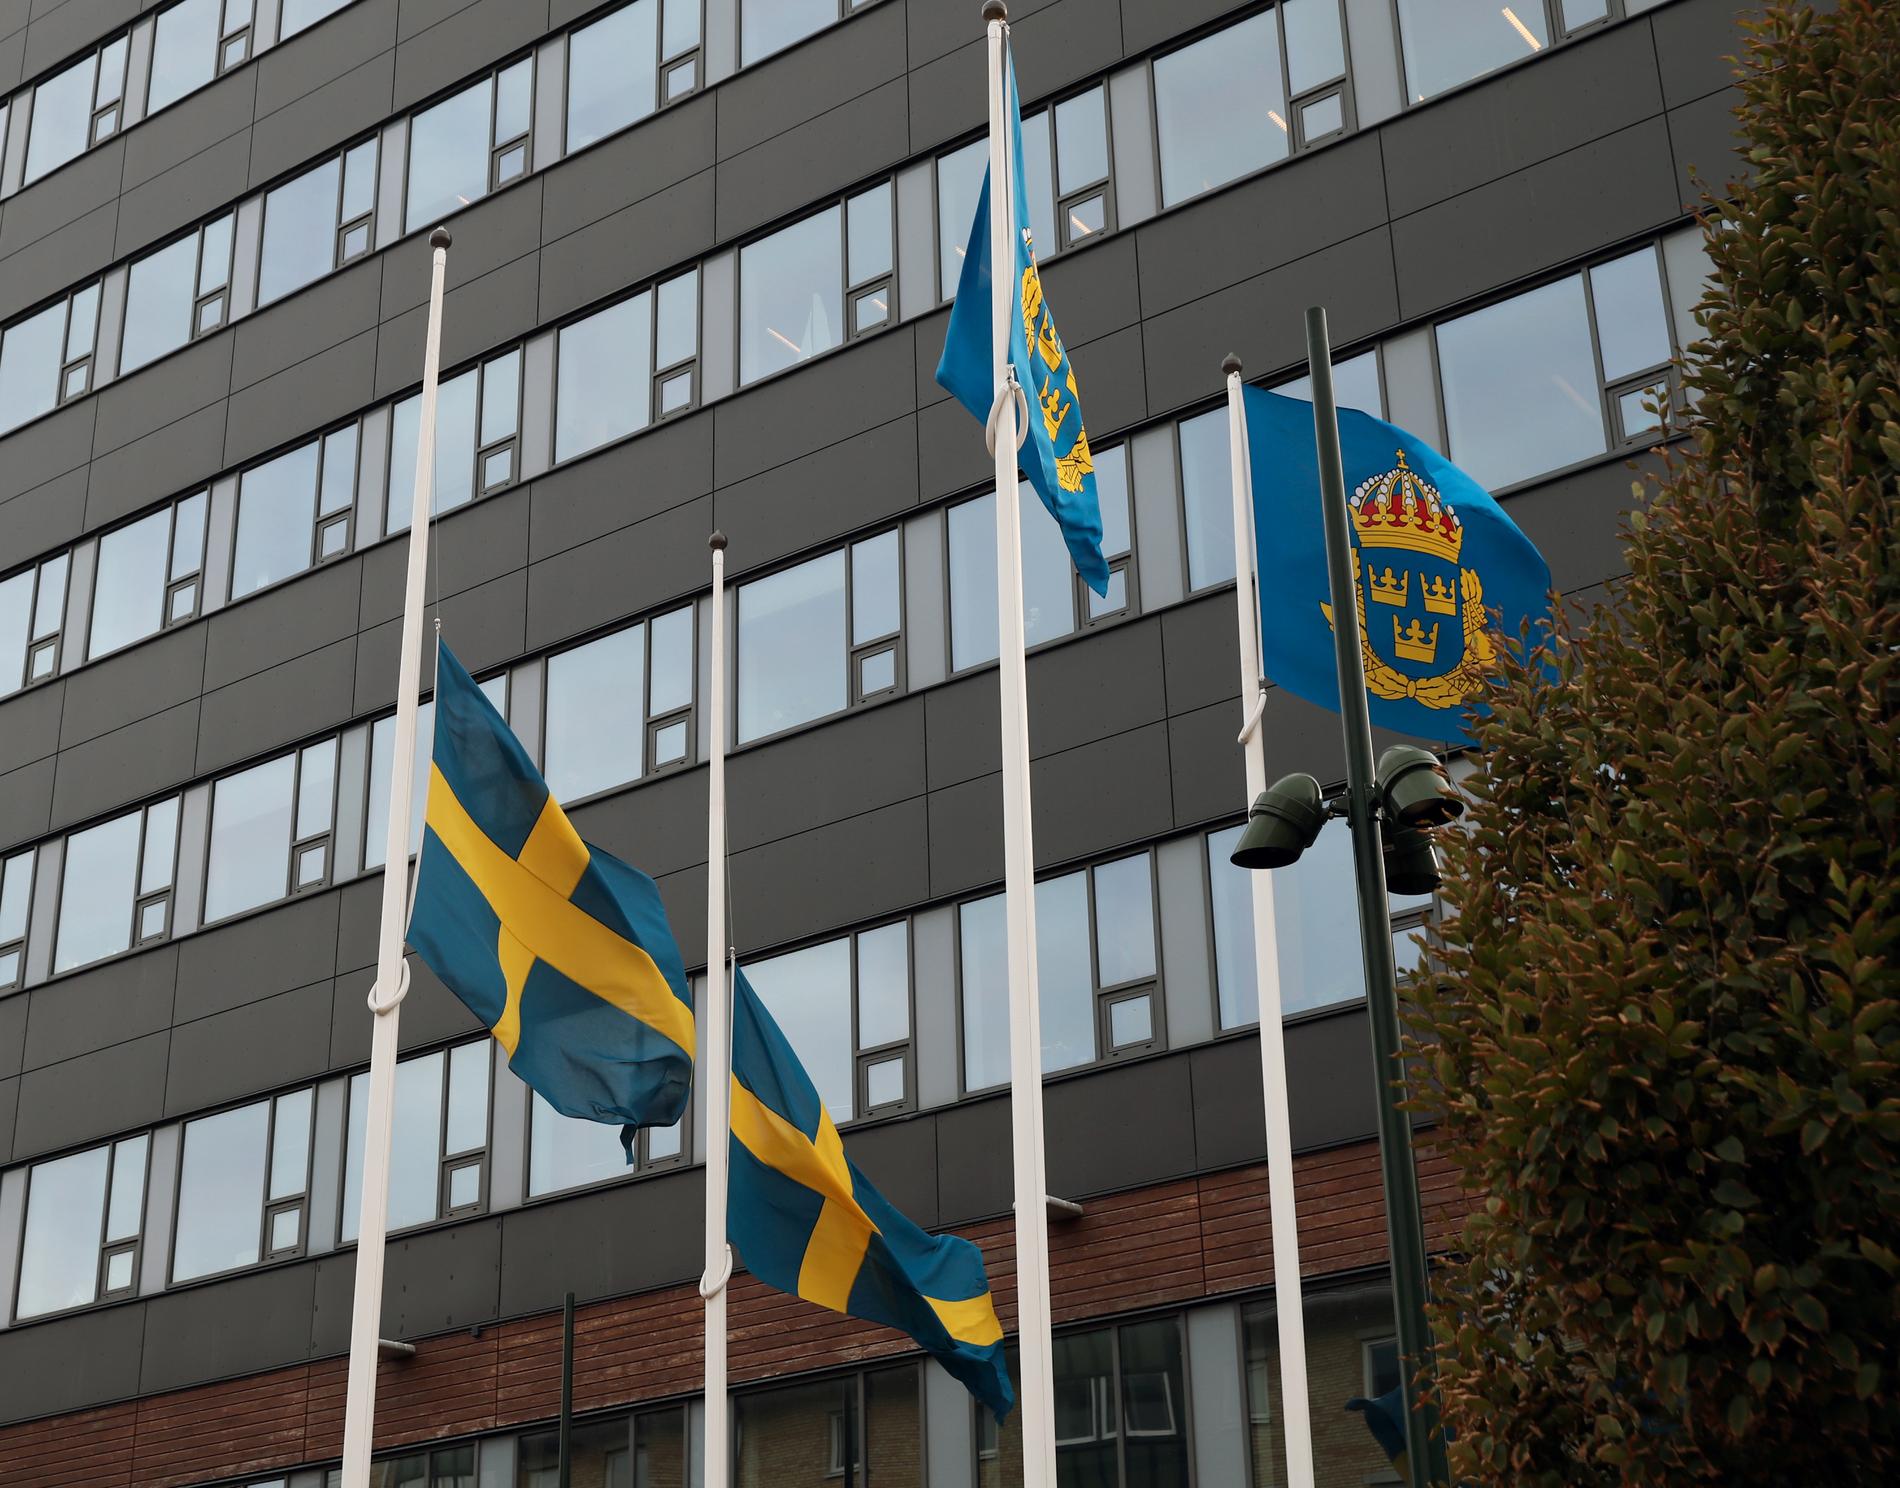 Alla polisstationer flaggade på halv stång, sa Region Syds polischef under polisens pressträff. Här är polisstationen i Malmö.